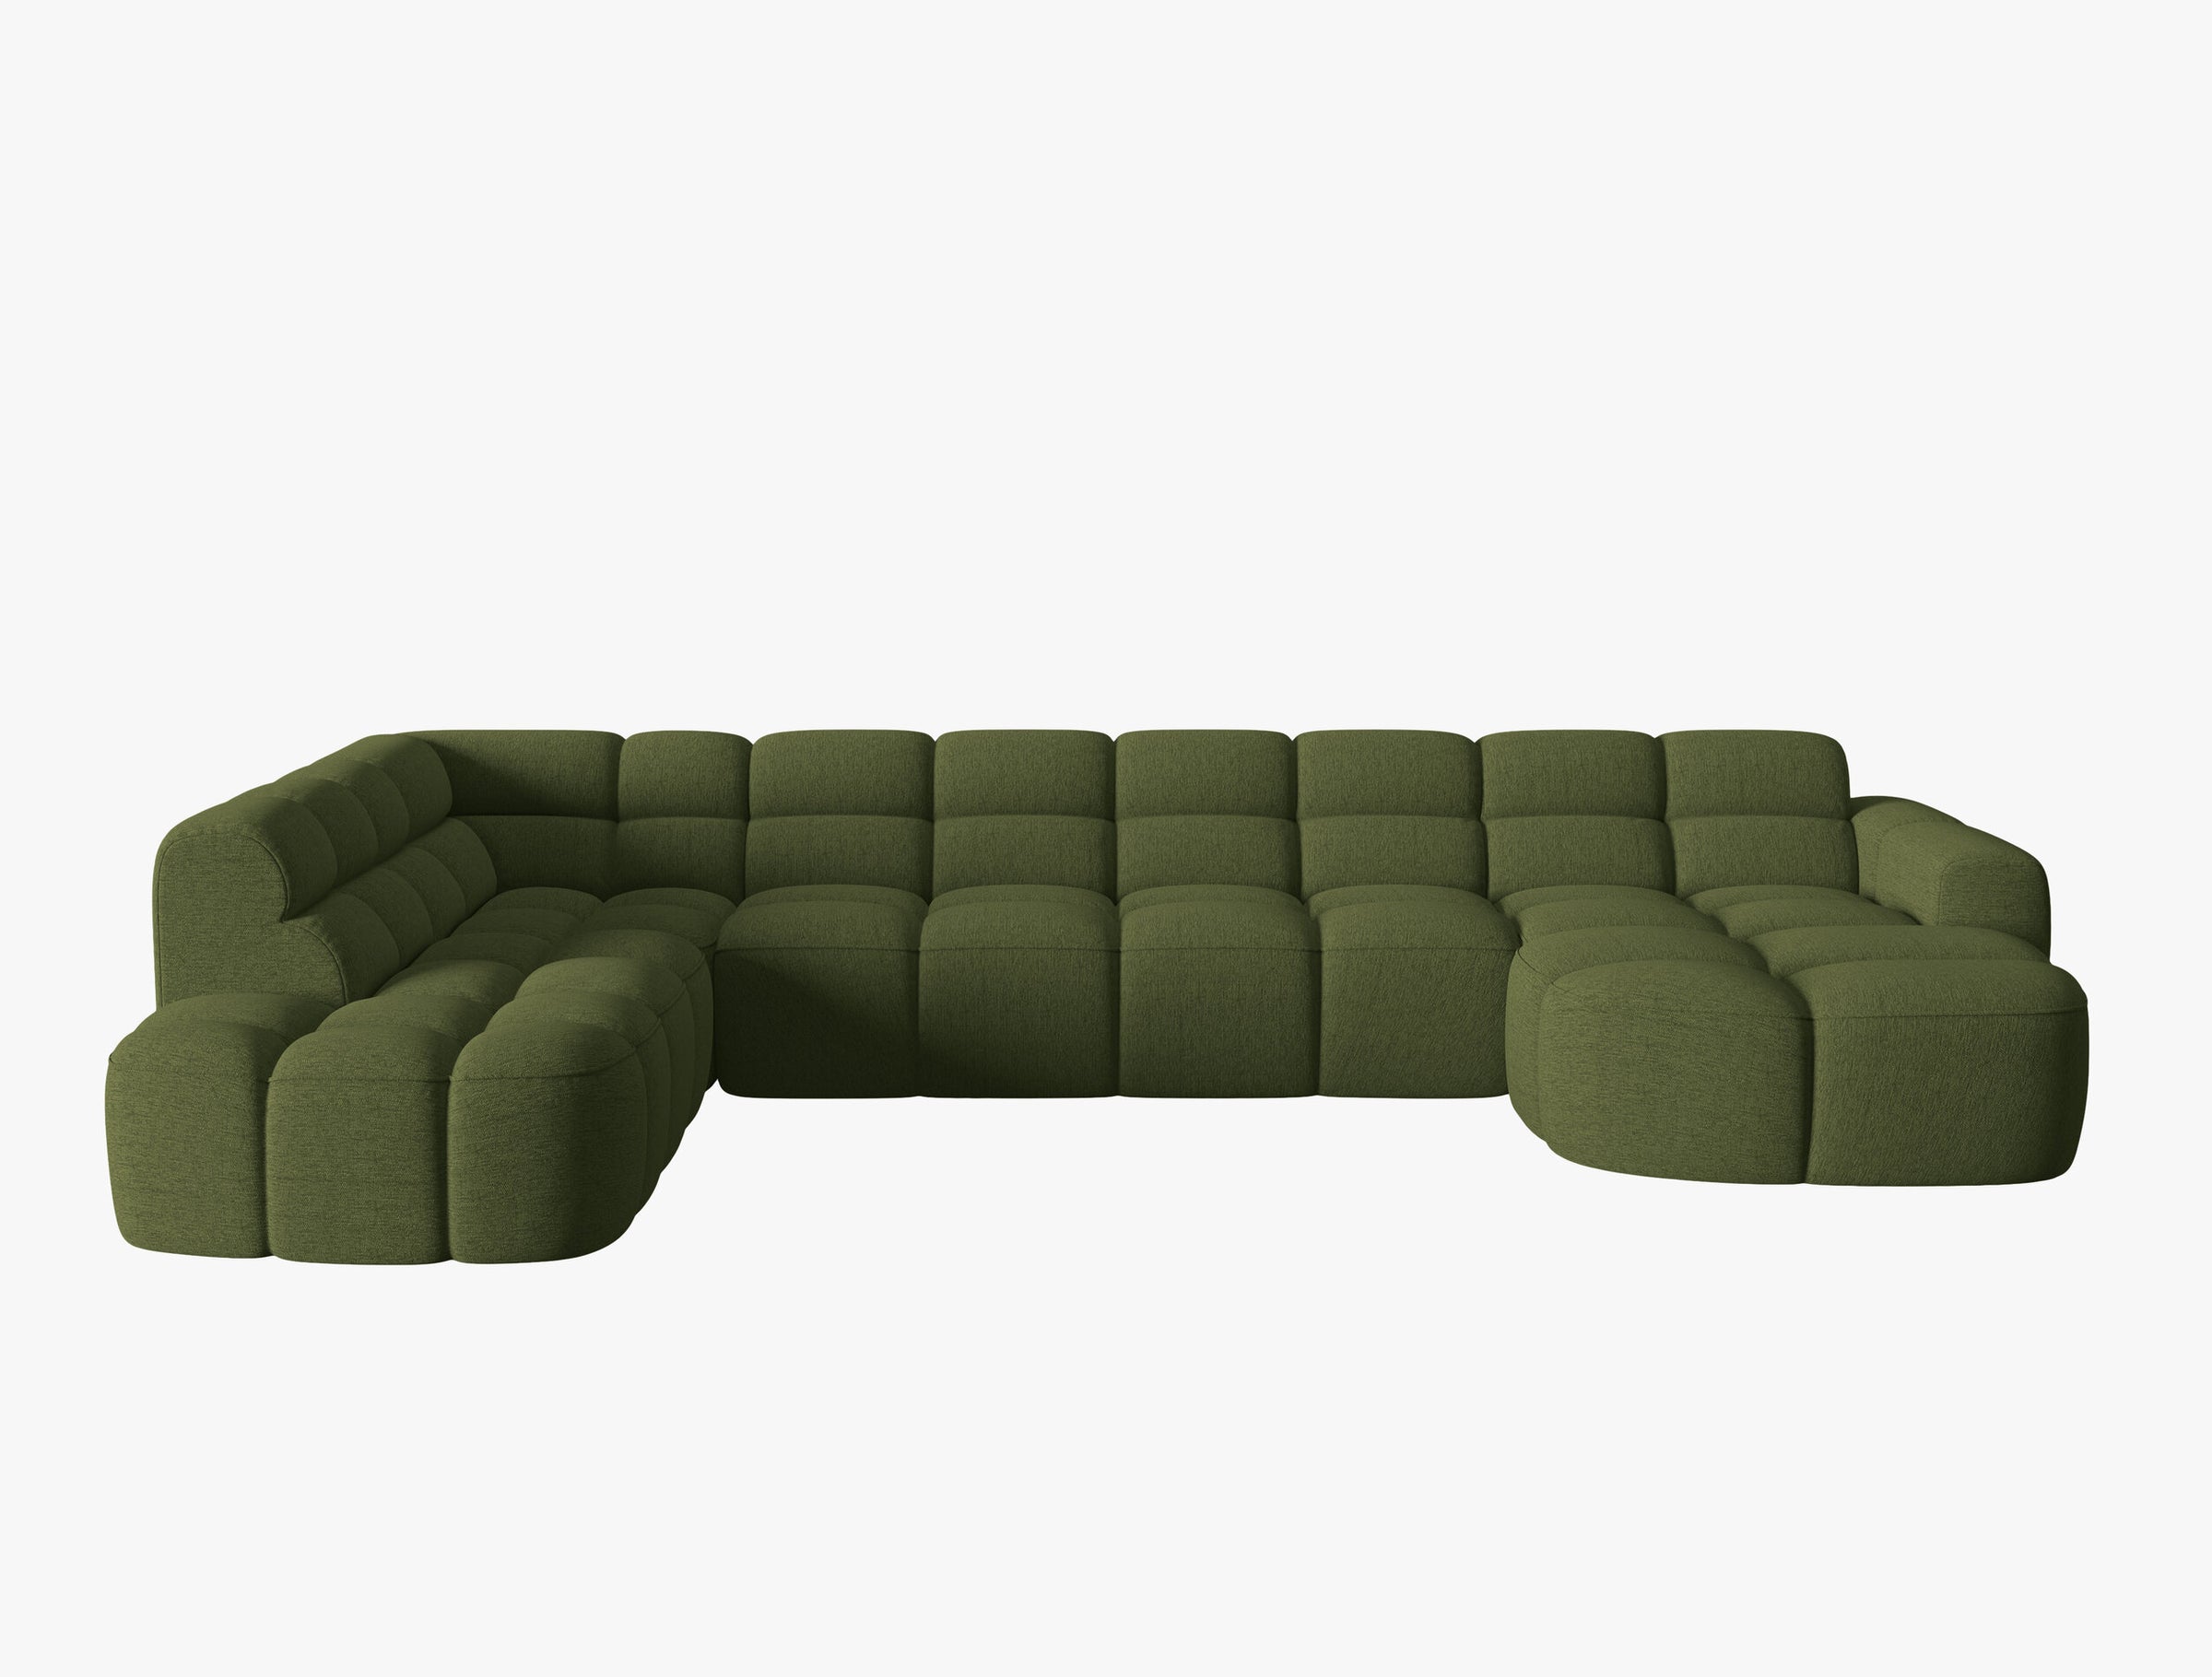 Lisa Structured fabric (Sor35) / Green melange 0